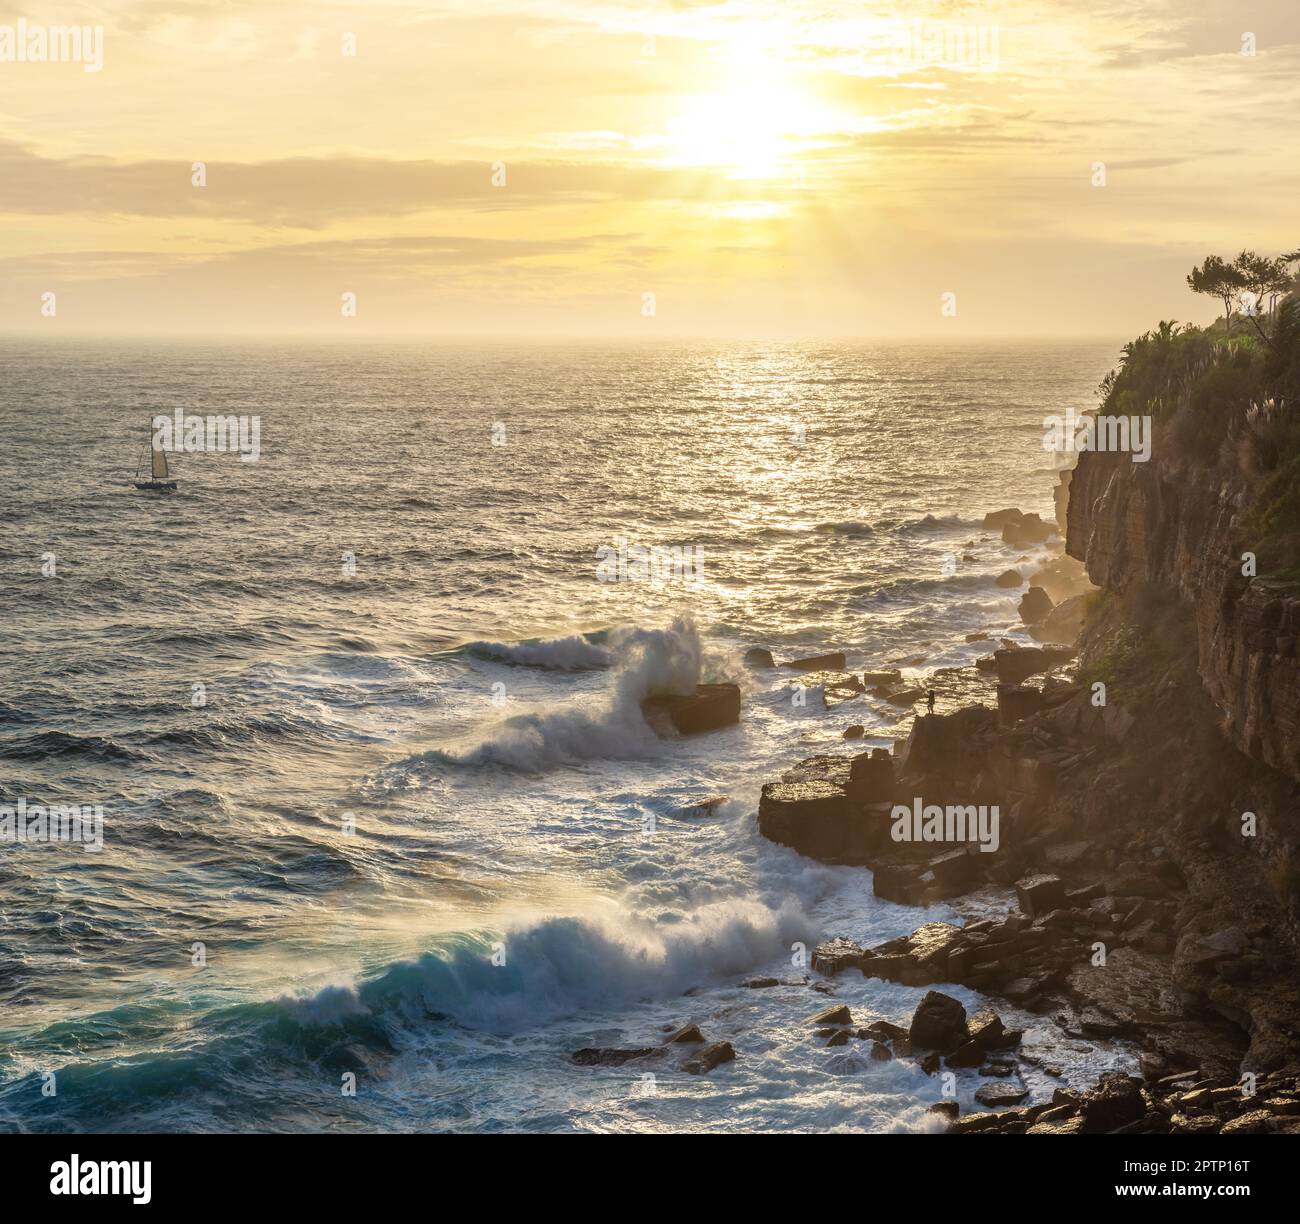 Magnifique coucher de soleil coloré et ciel spectaculaire vif sur la rive rocheuse de l'océan Atlantique. Banque D'Images